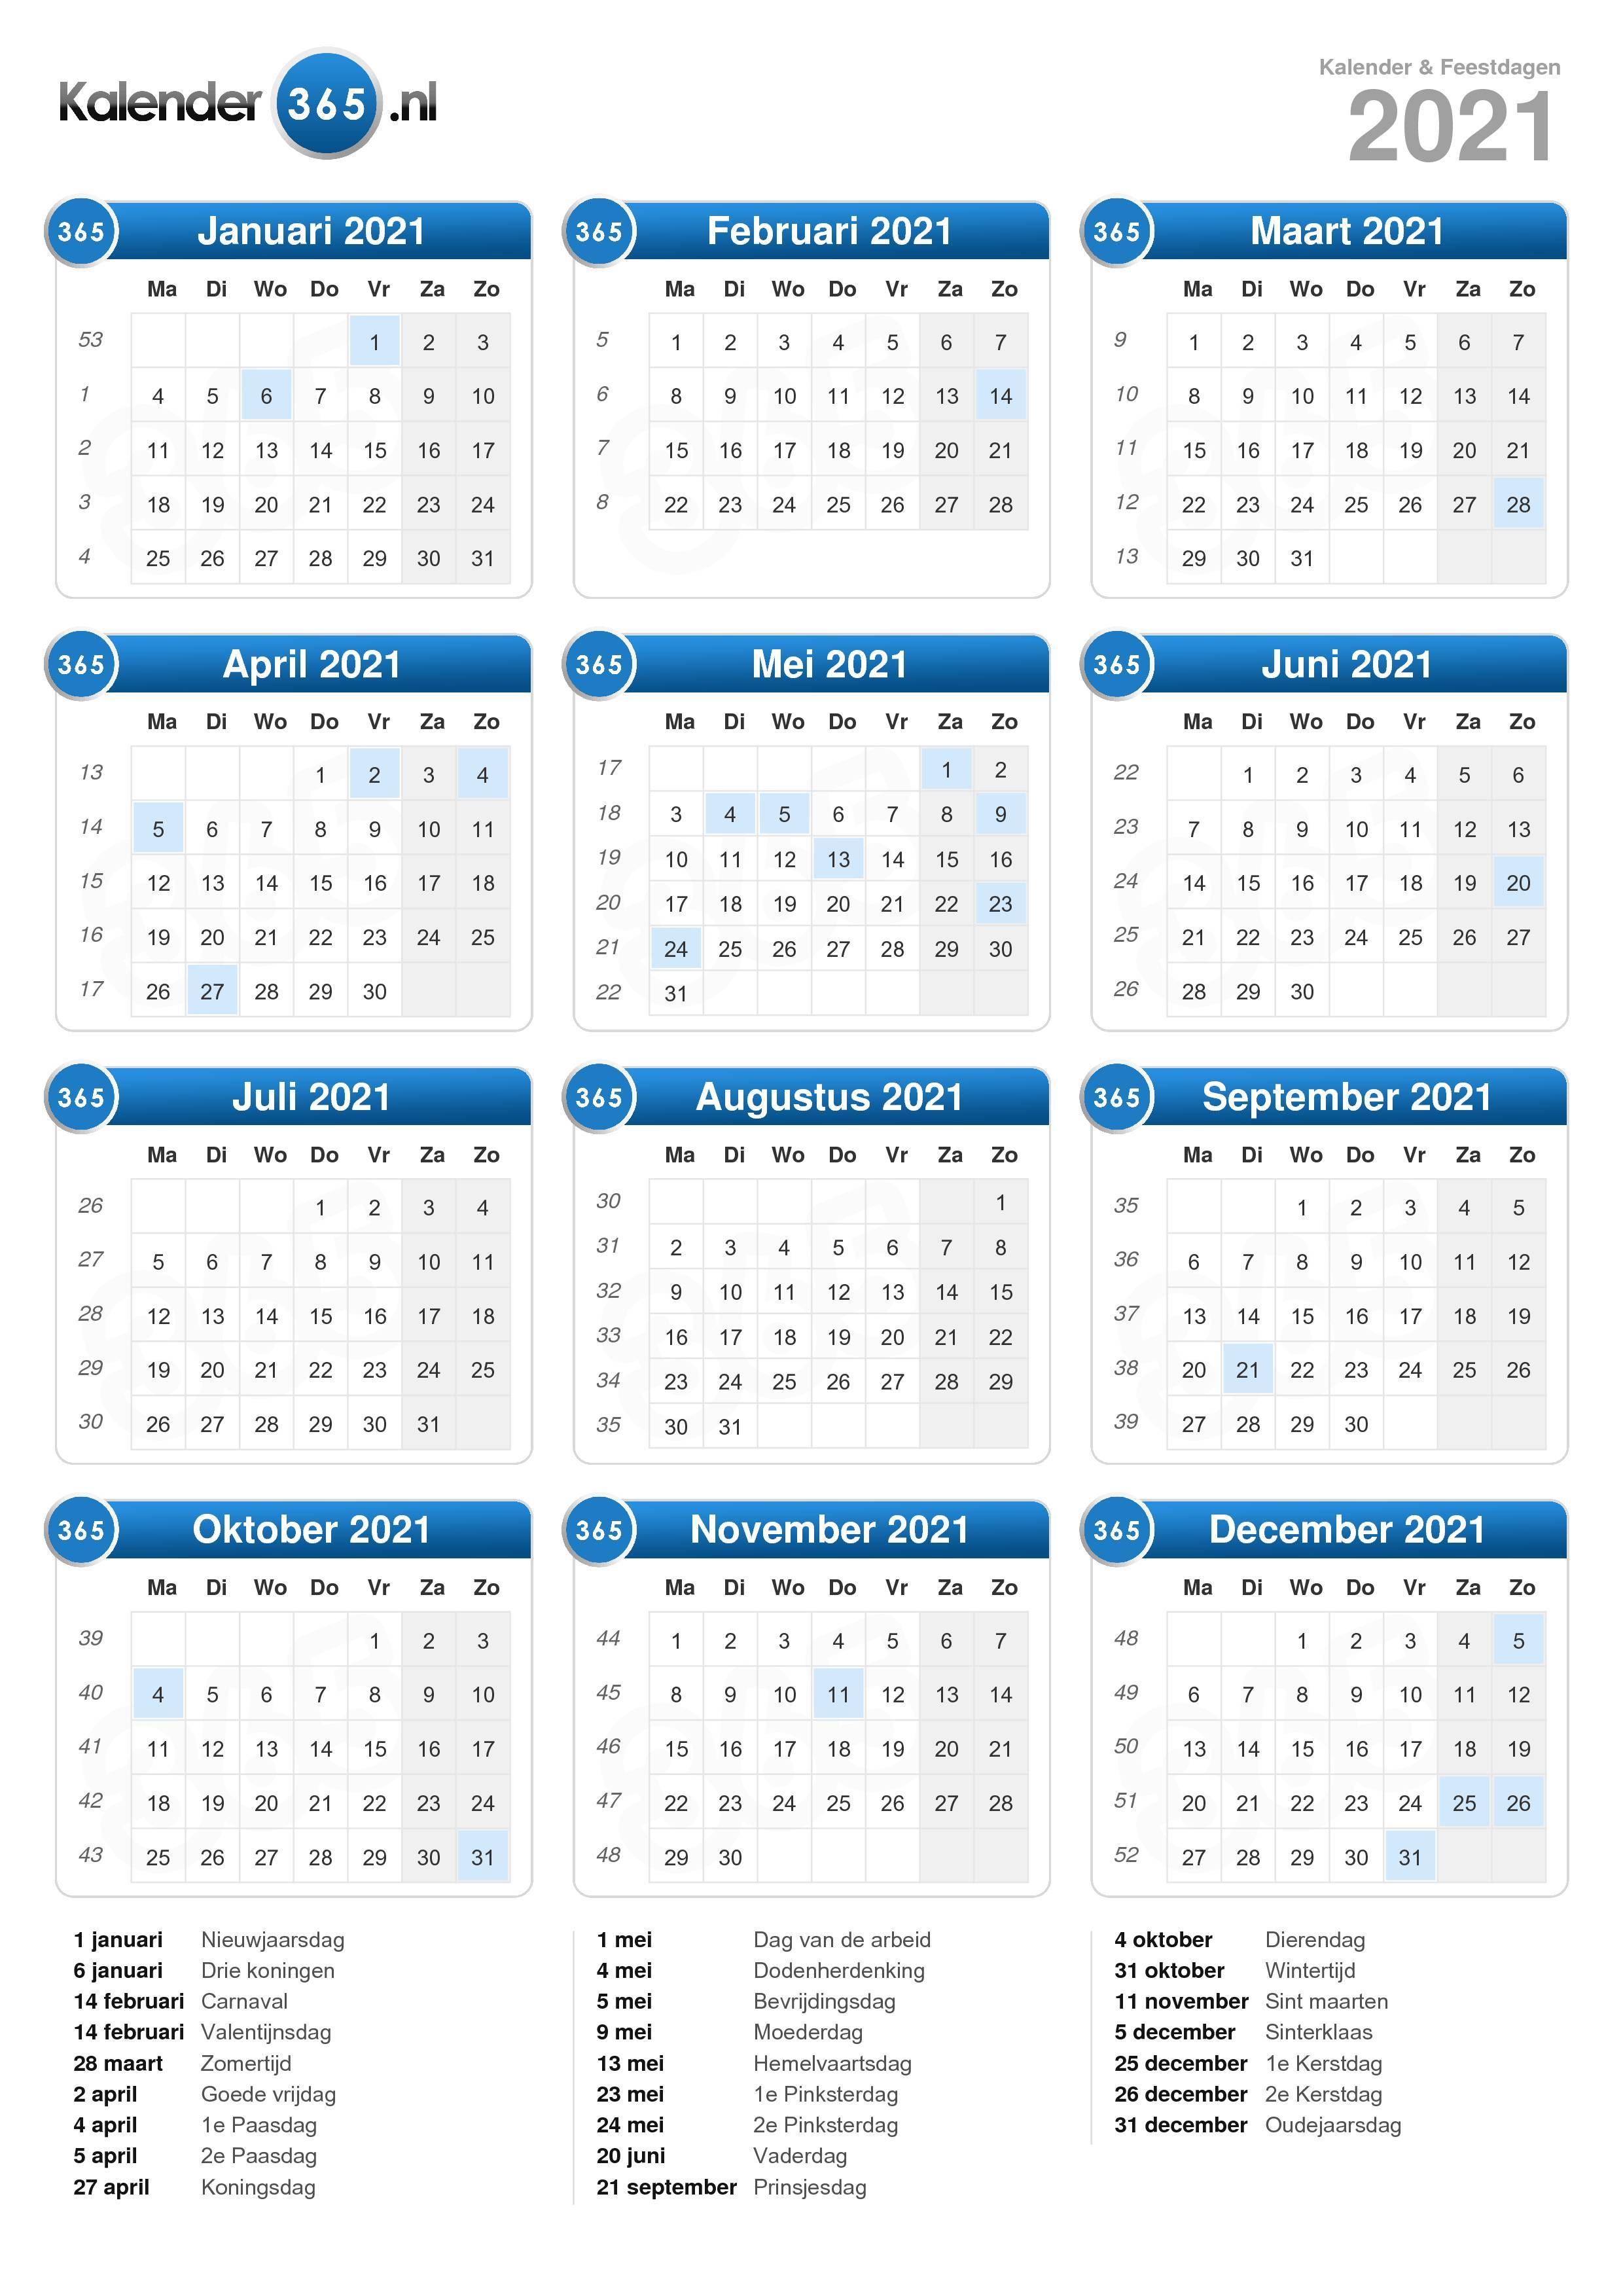 5 Mei 2021 Op Welke Dag Kalender 2021